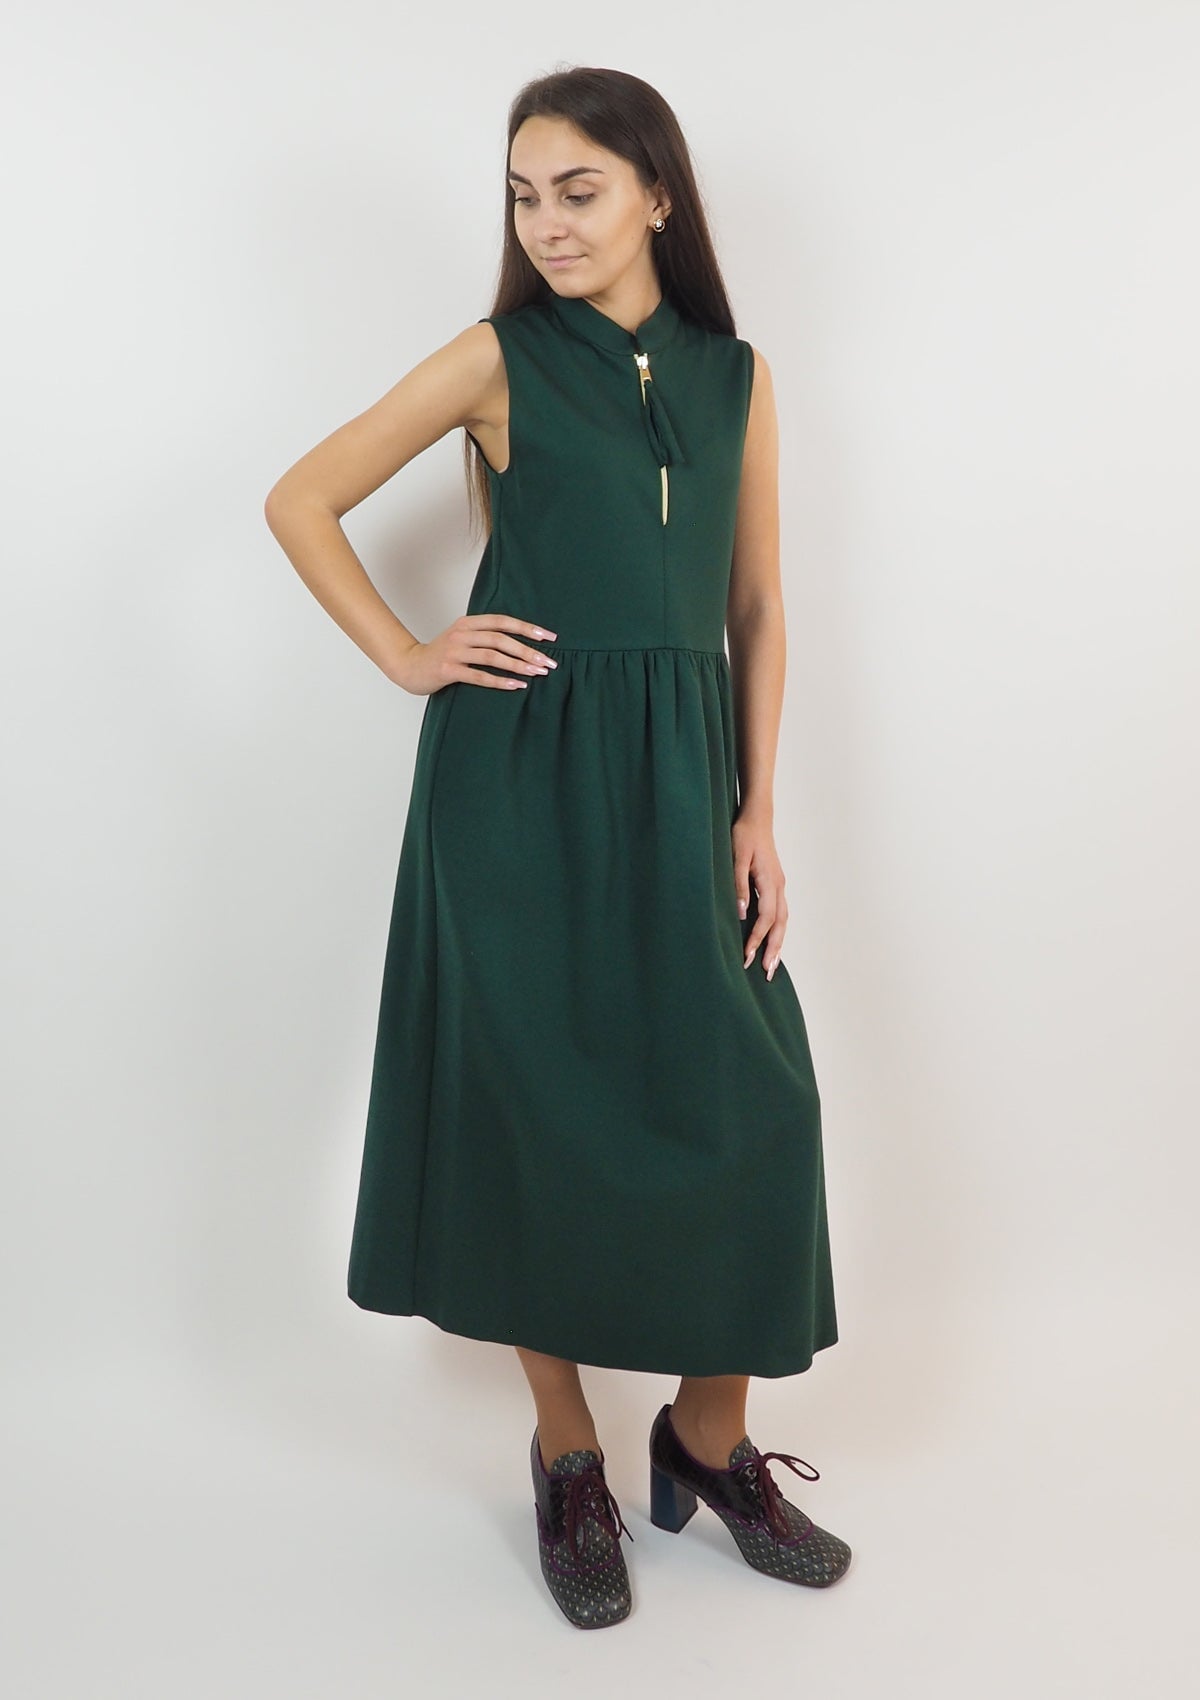 Damen Kleid aus Viskose in Grün - Abito Damen Kleid SHIRTAPORTER 